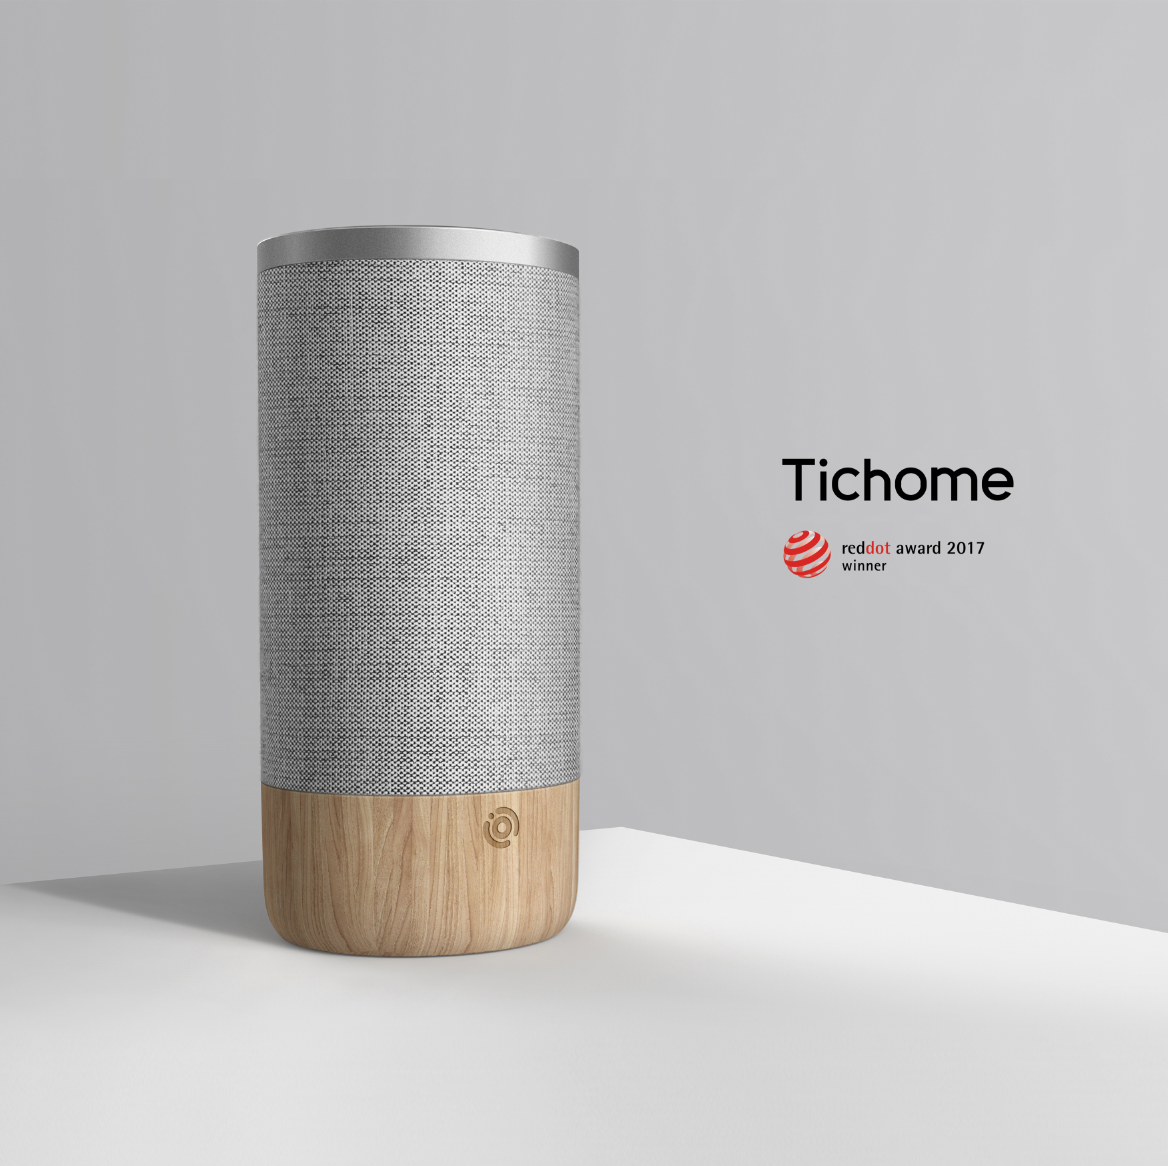 2017年,问问音箱tichome获得了德国红点设计奖.